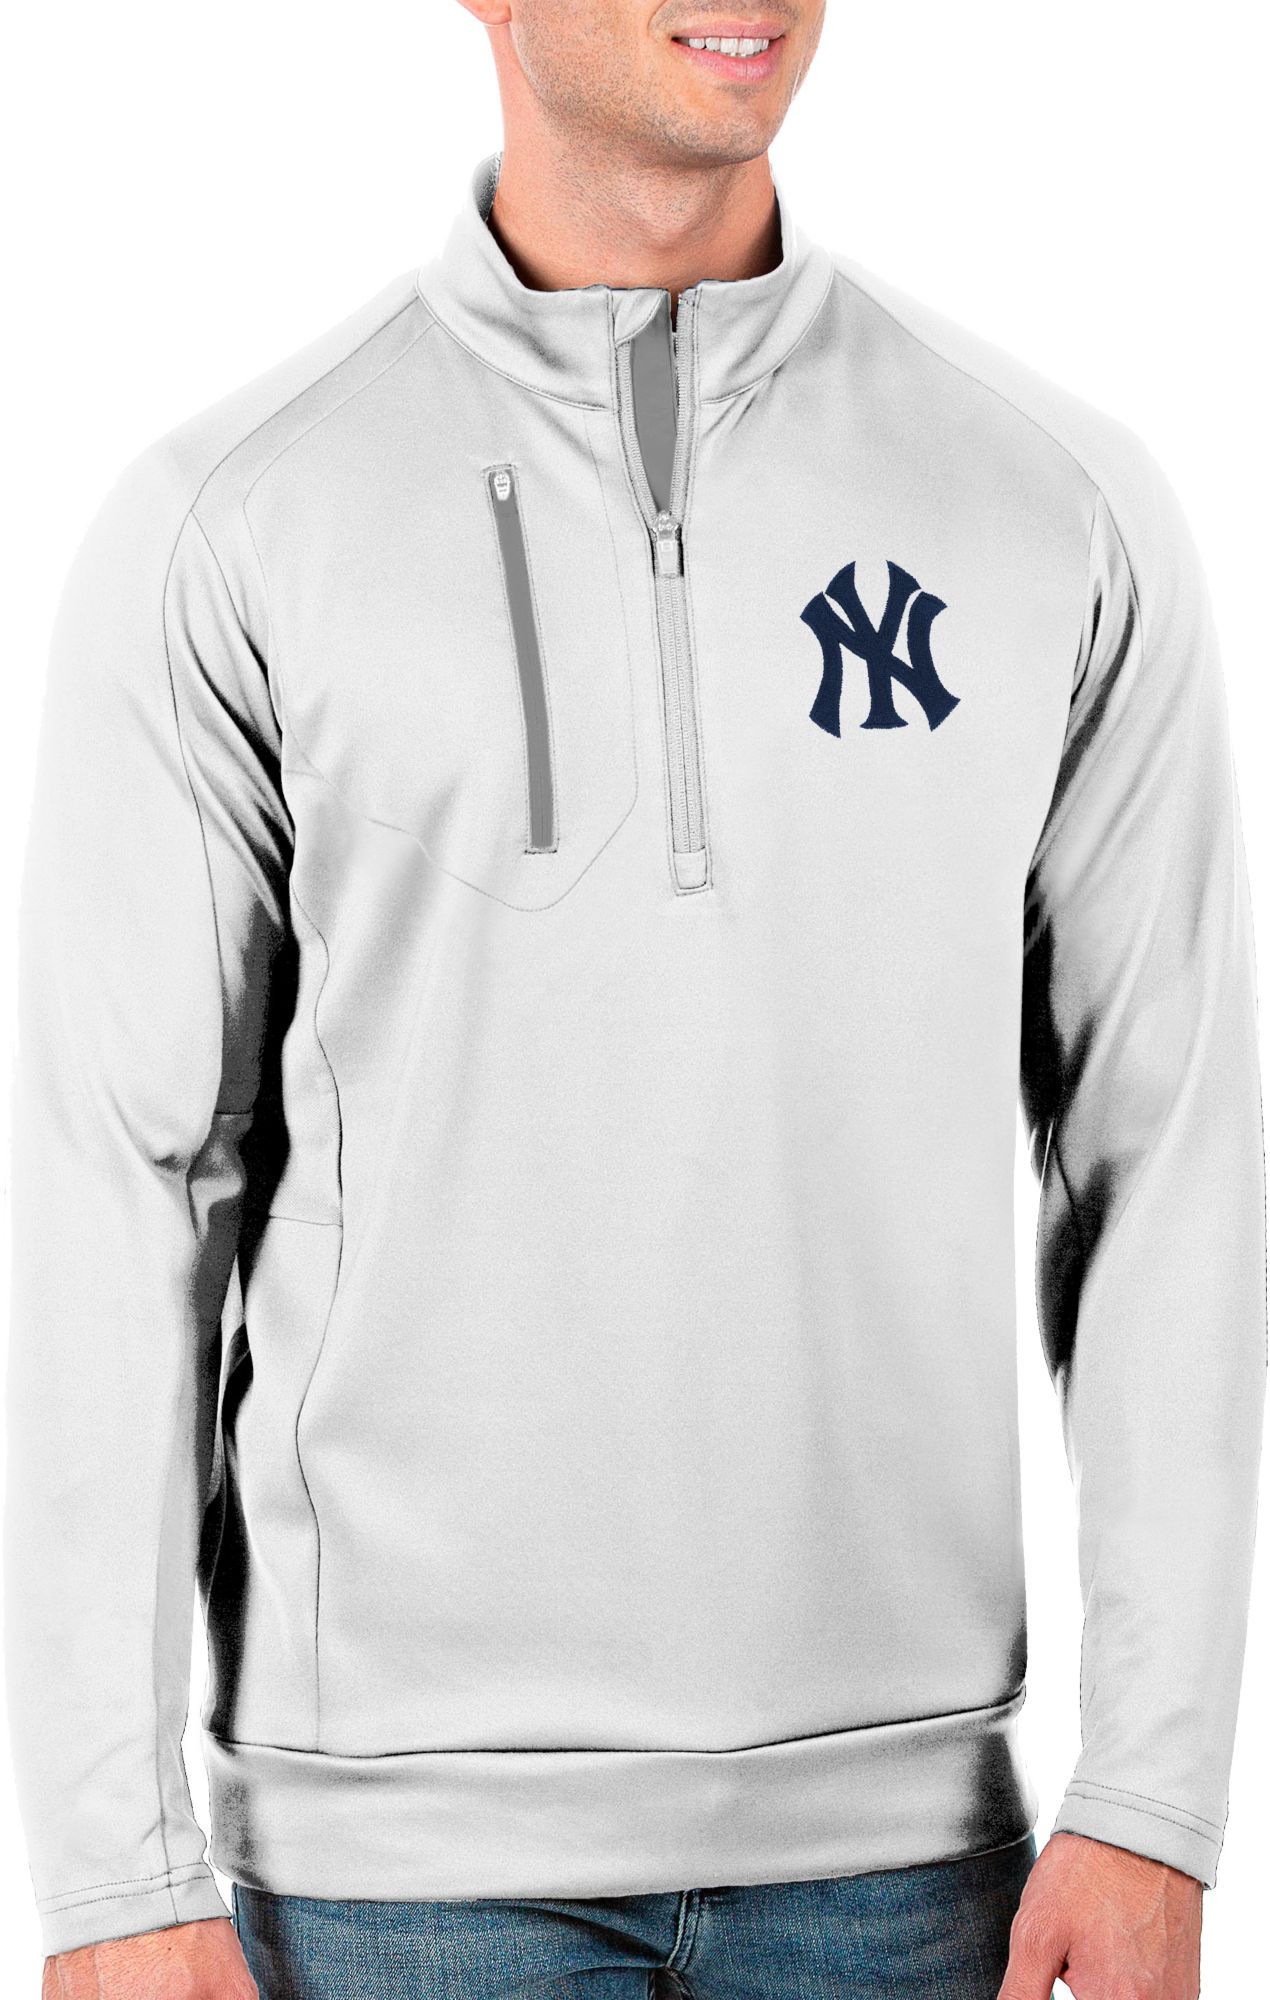 New York Yankees Men's Apparel